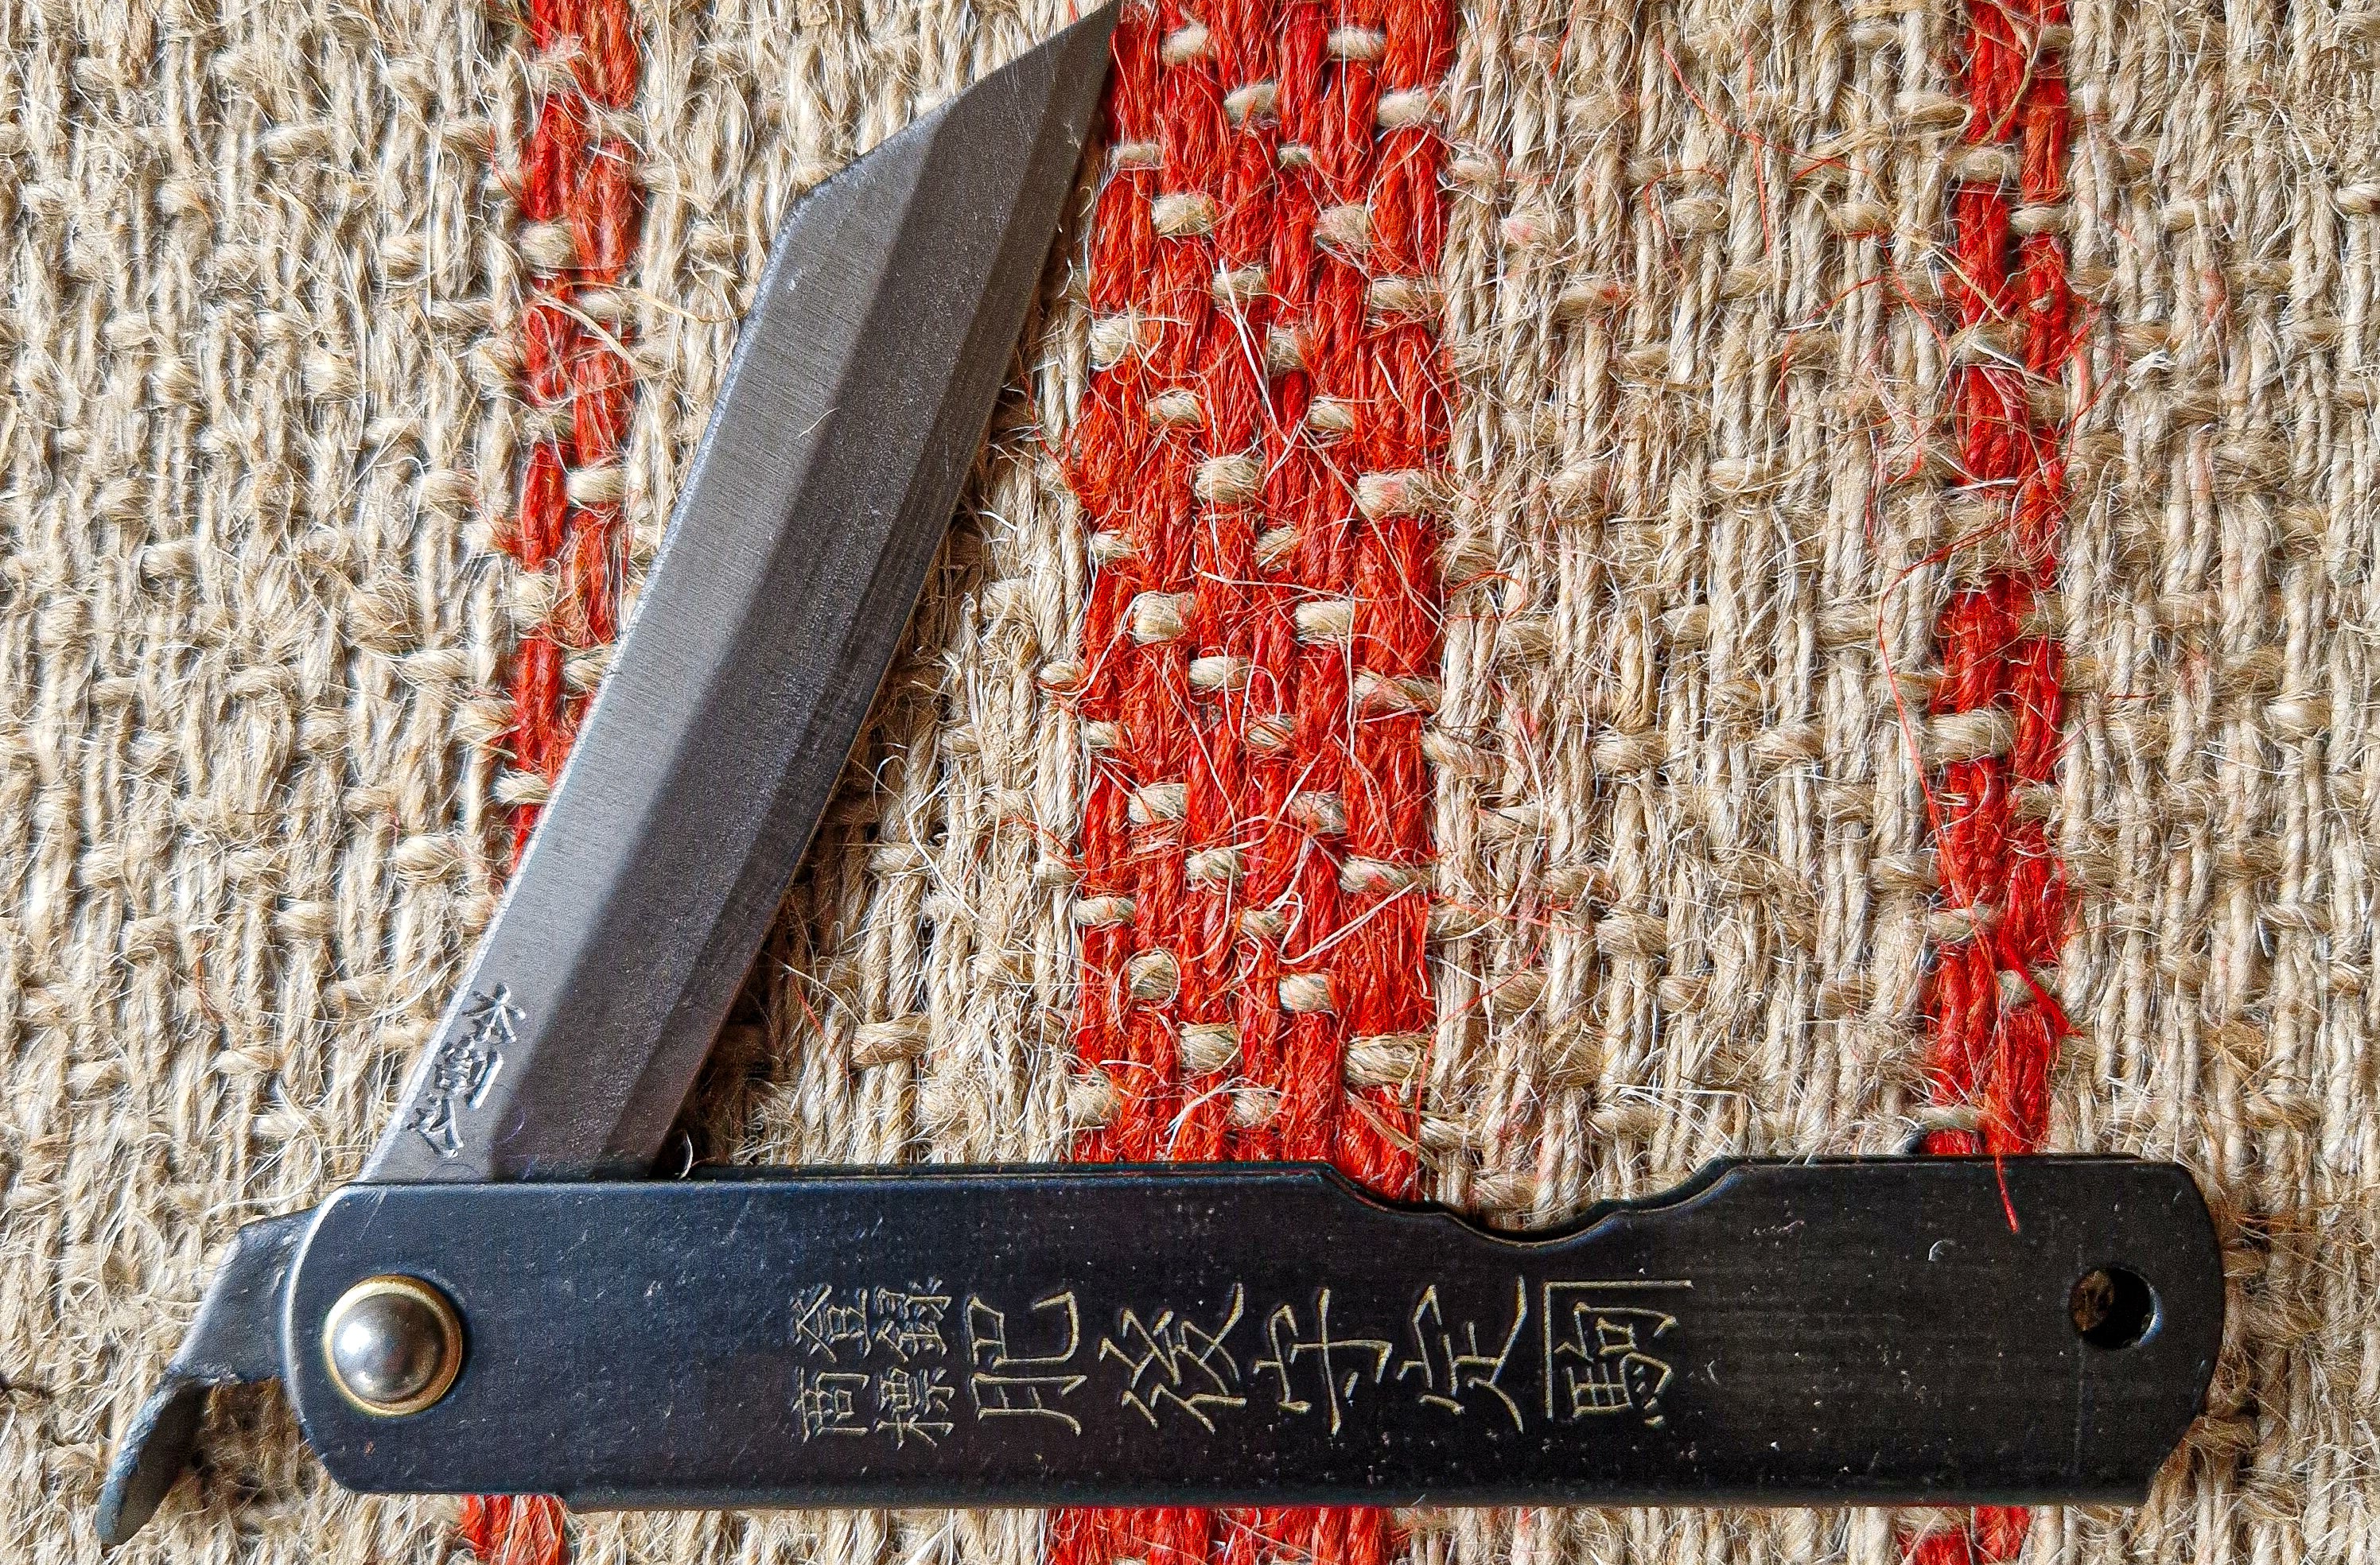 Niwaki SK Higonokami Folding Knife - Tom's Yard